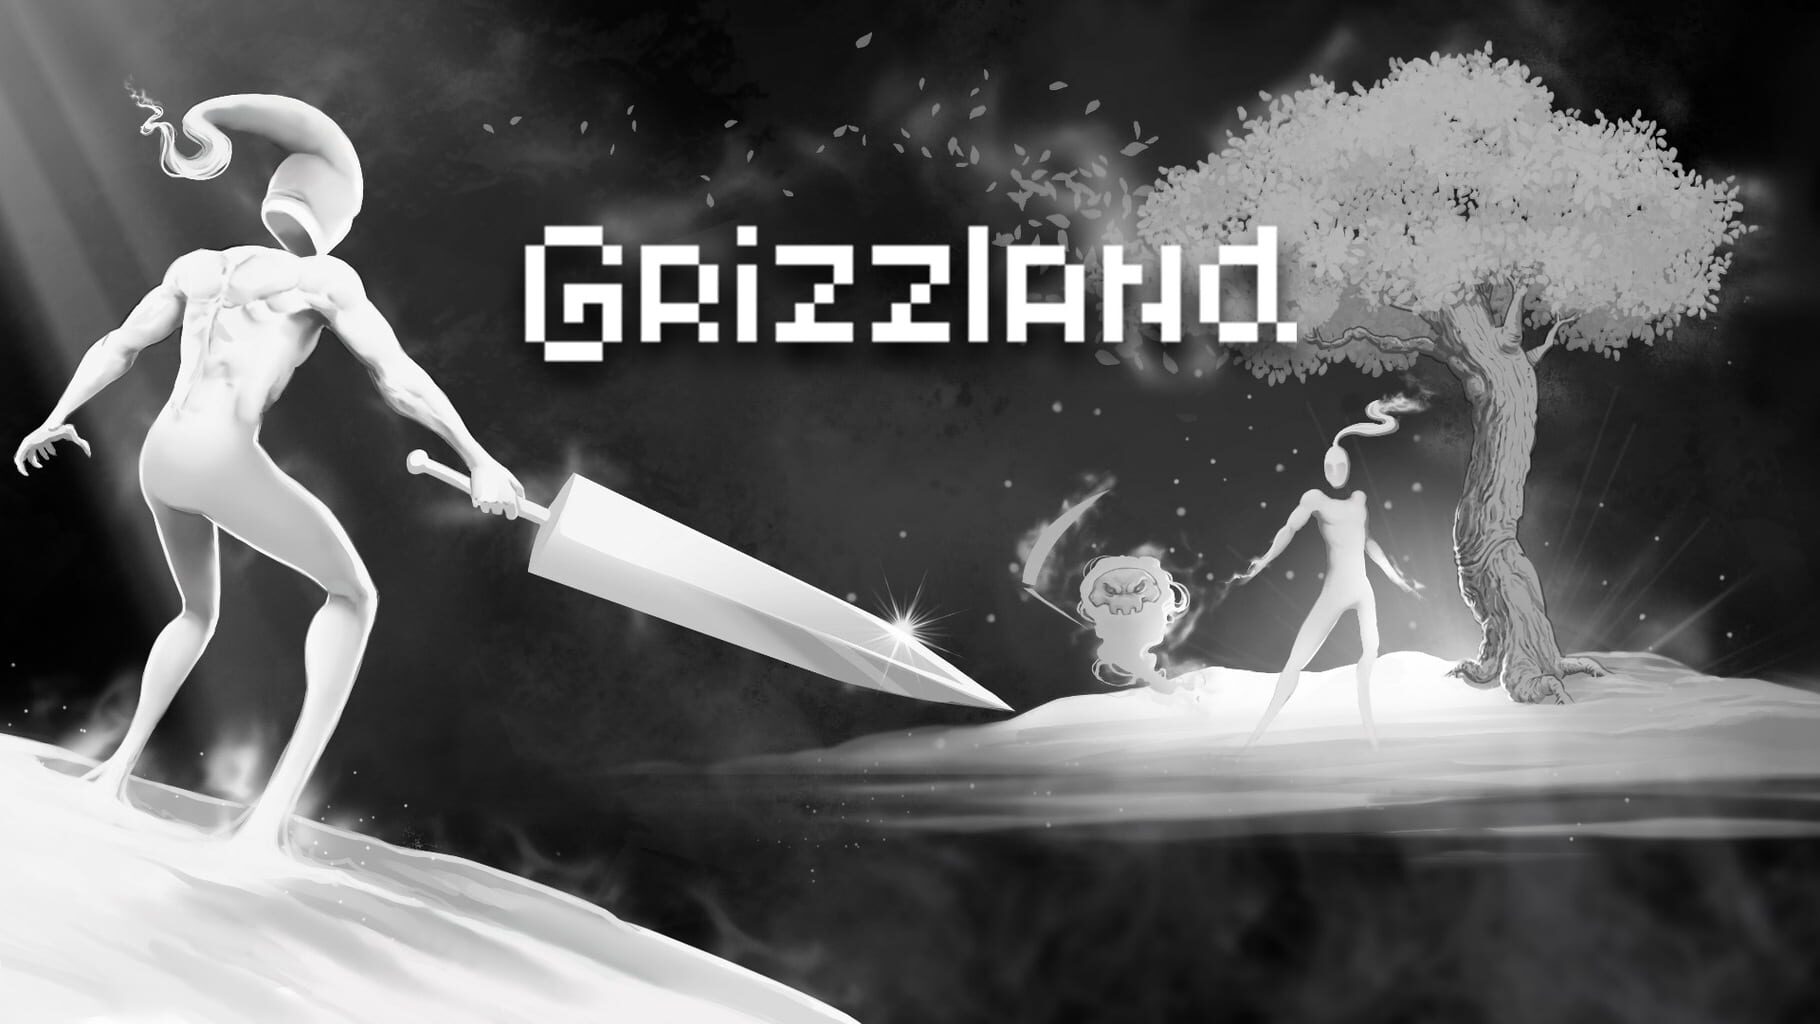 Grizzland artwork